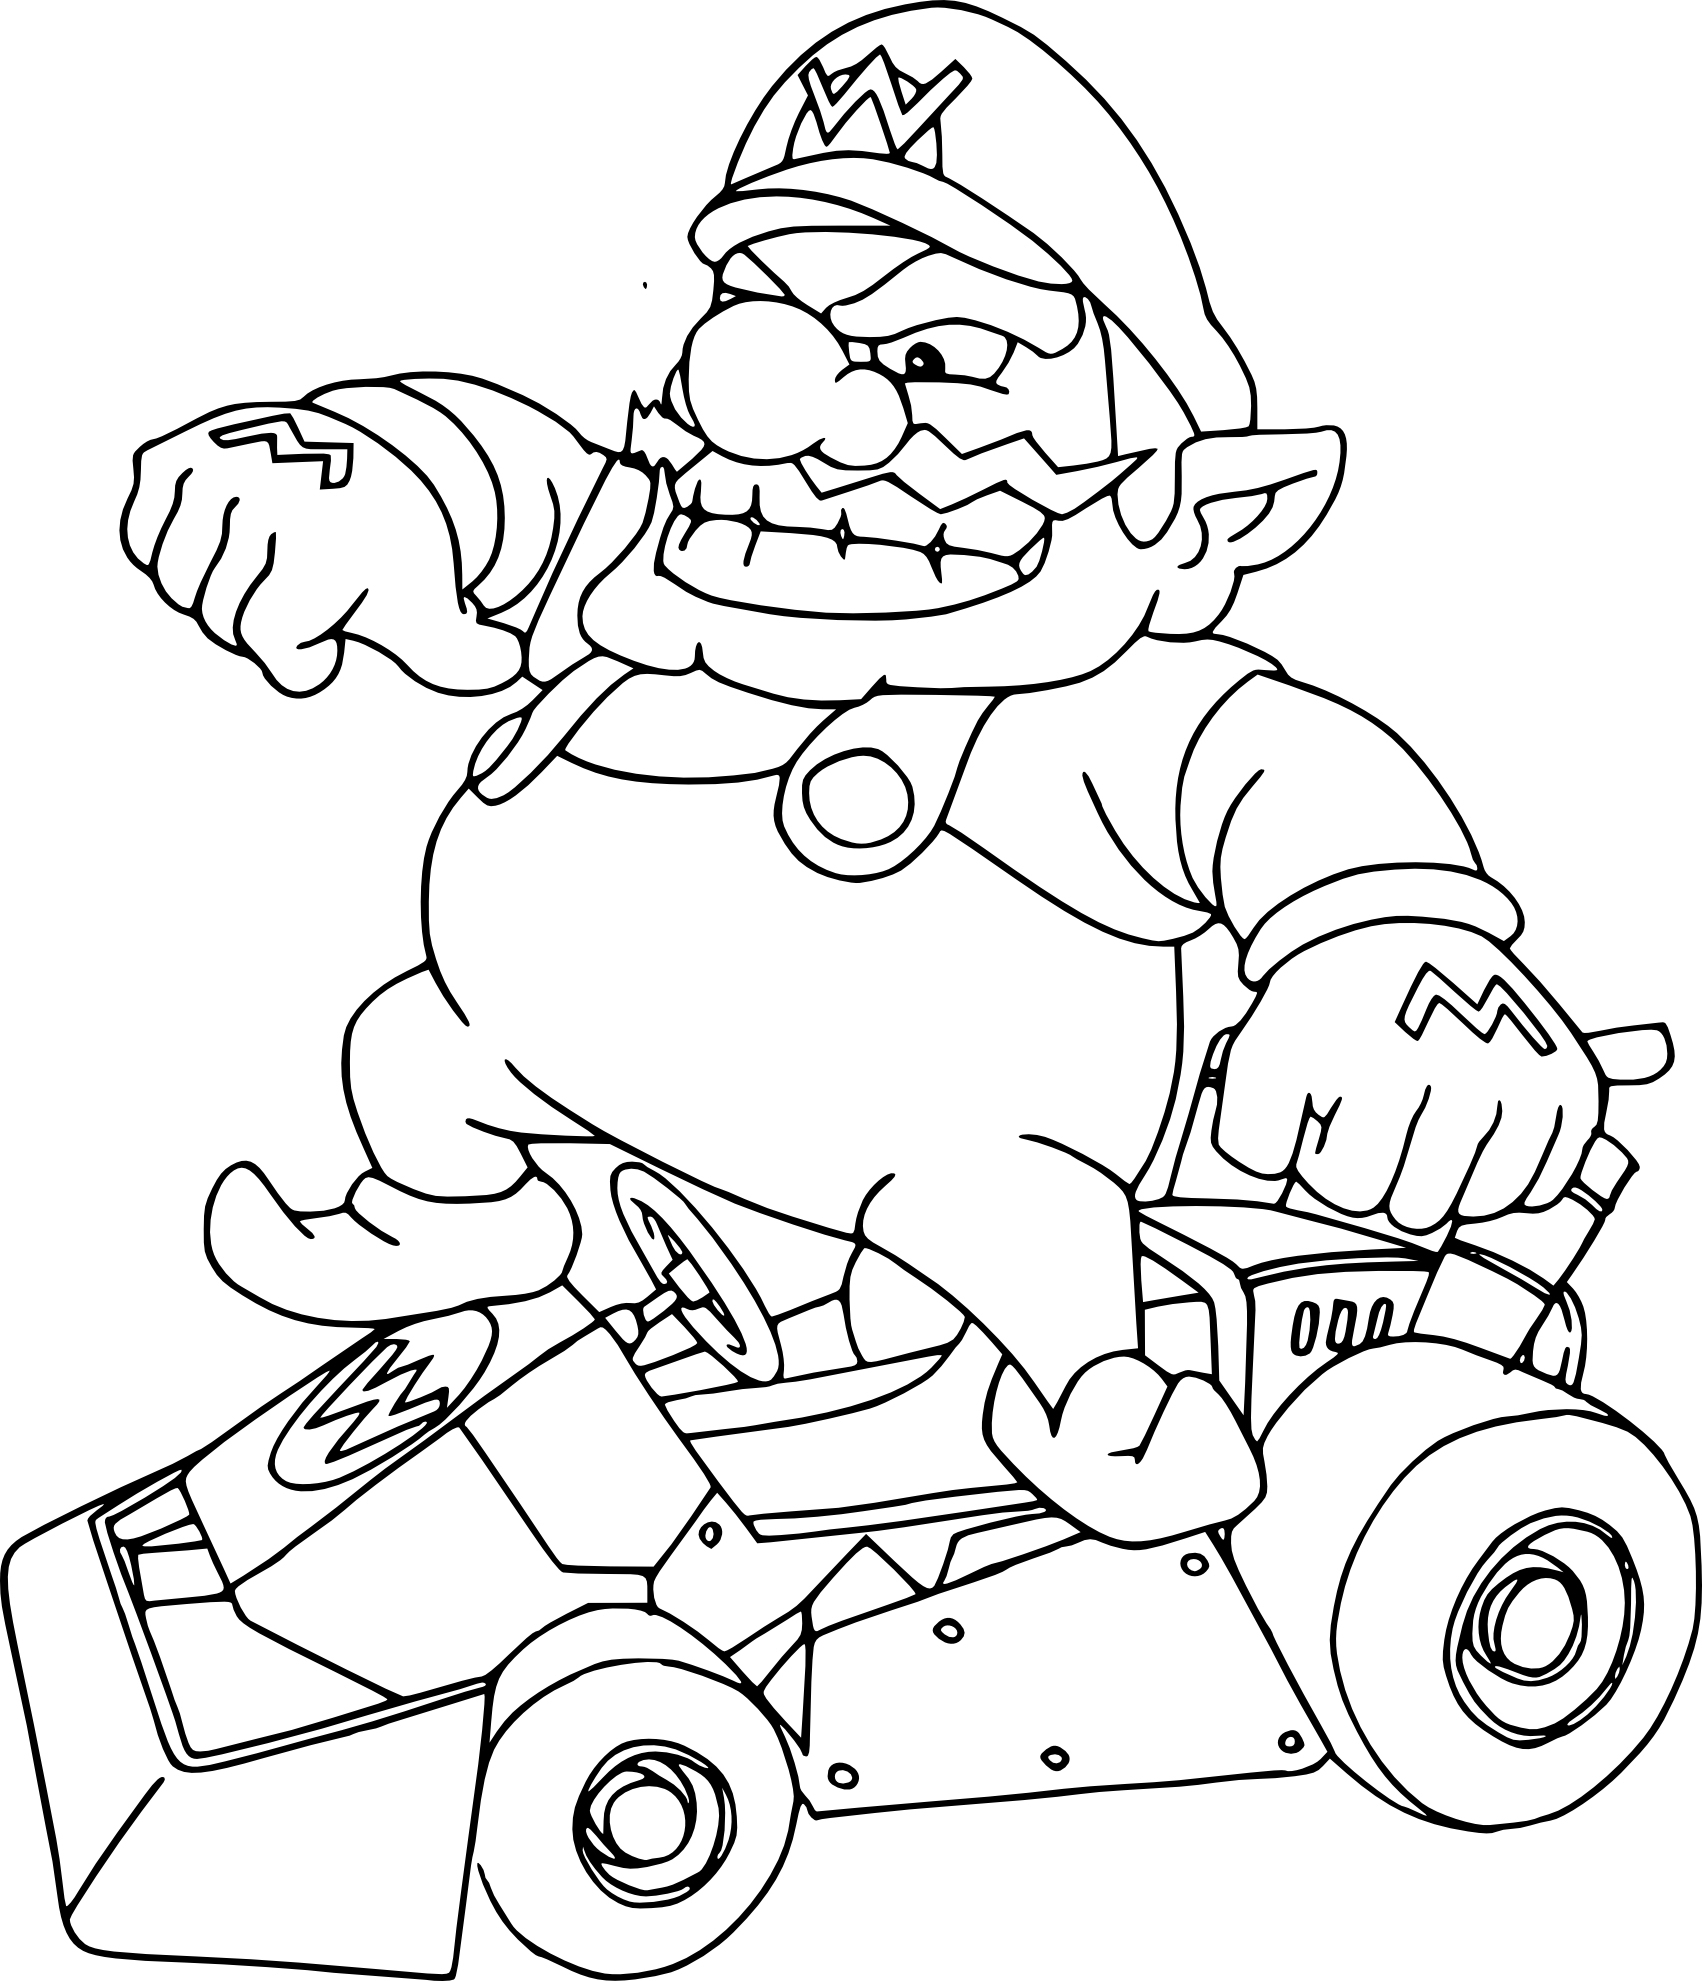 Coloriage Wario Mario Kart À Imprimer tout Dessin A Imprimer Mario 